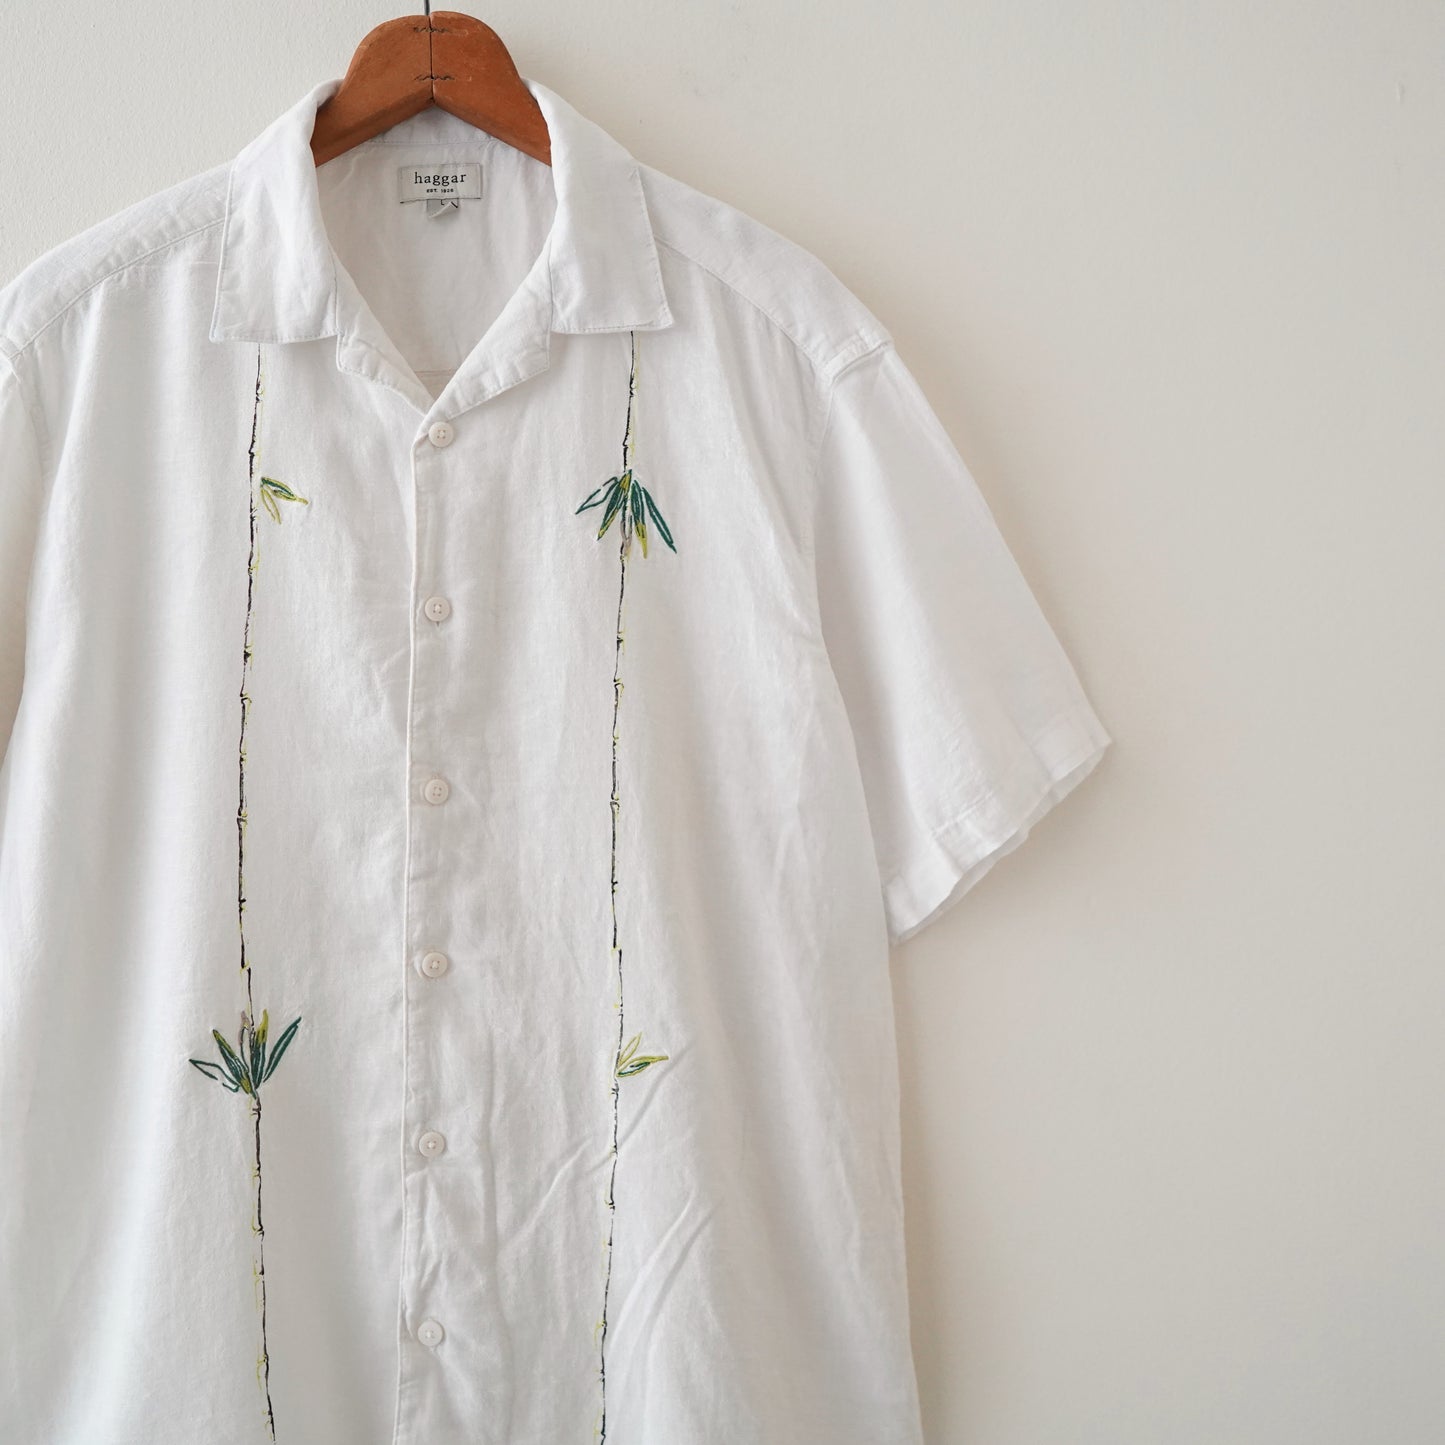 Aloha shirt